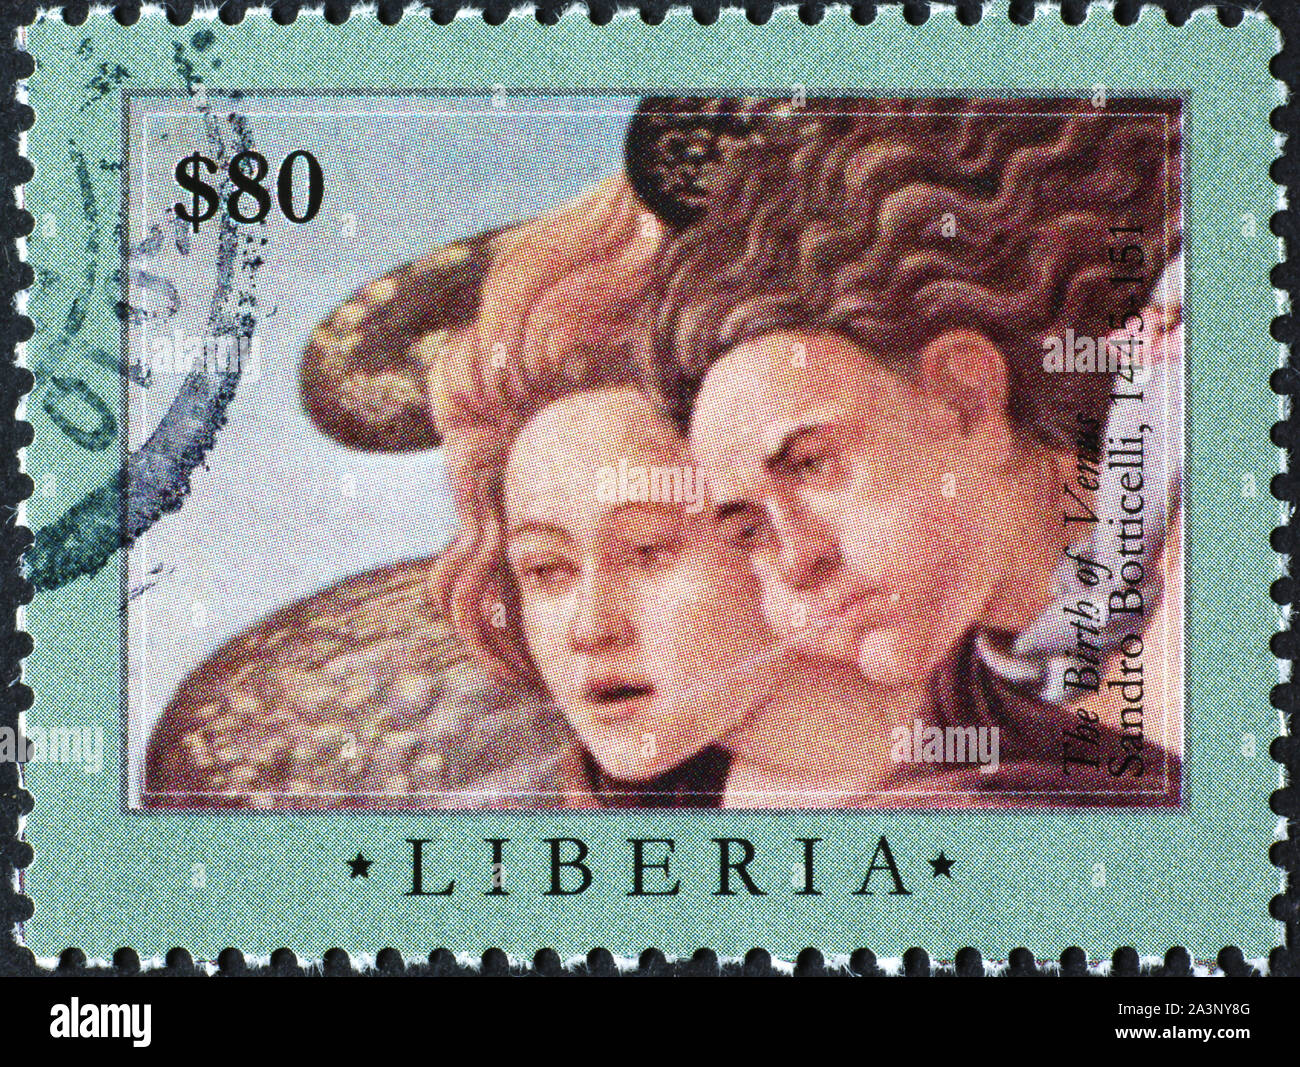 Engel von Botticelli auf Briefmarke lackiert Stockfoto